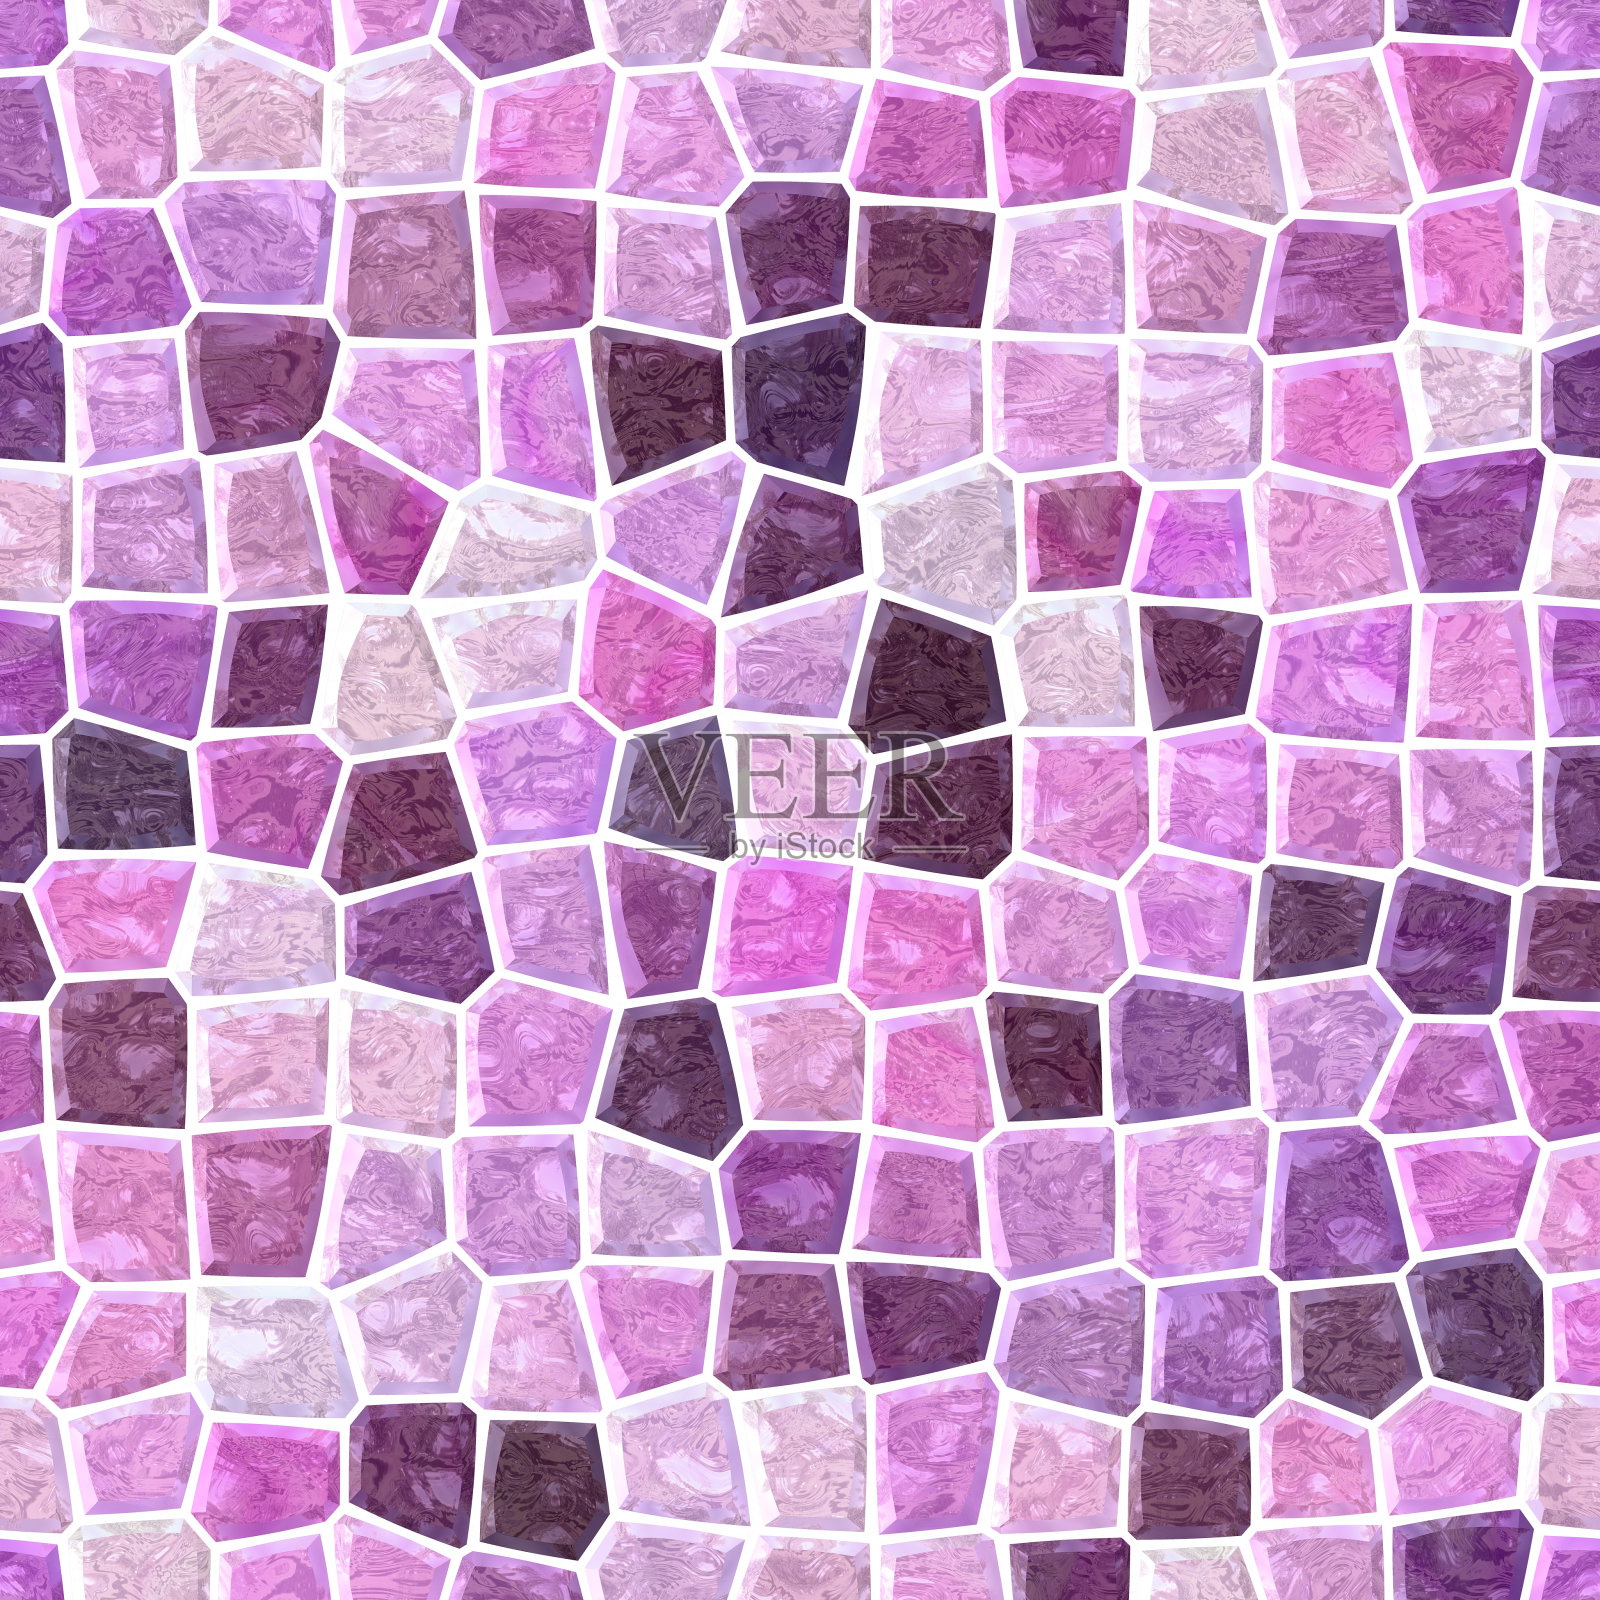 地面地板大理石马赛克图案无缝背景粉红紫罗兰紫色插画图片素材